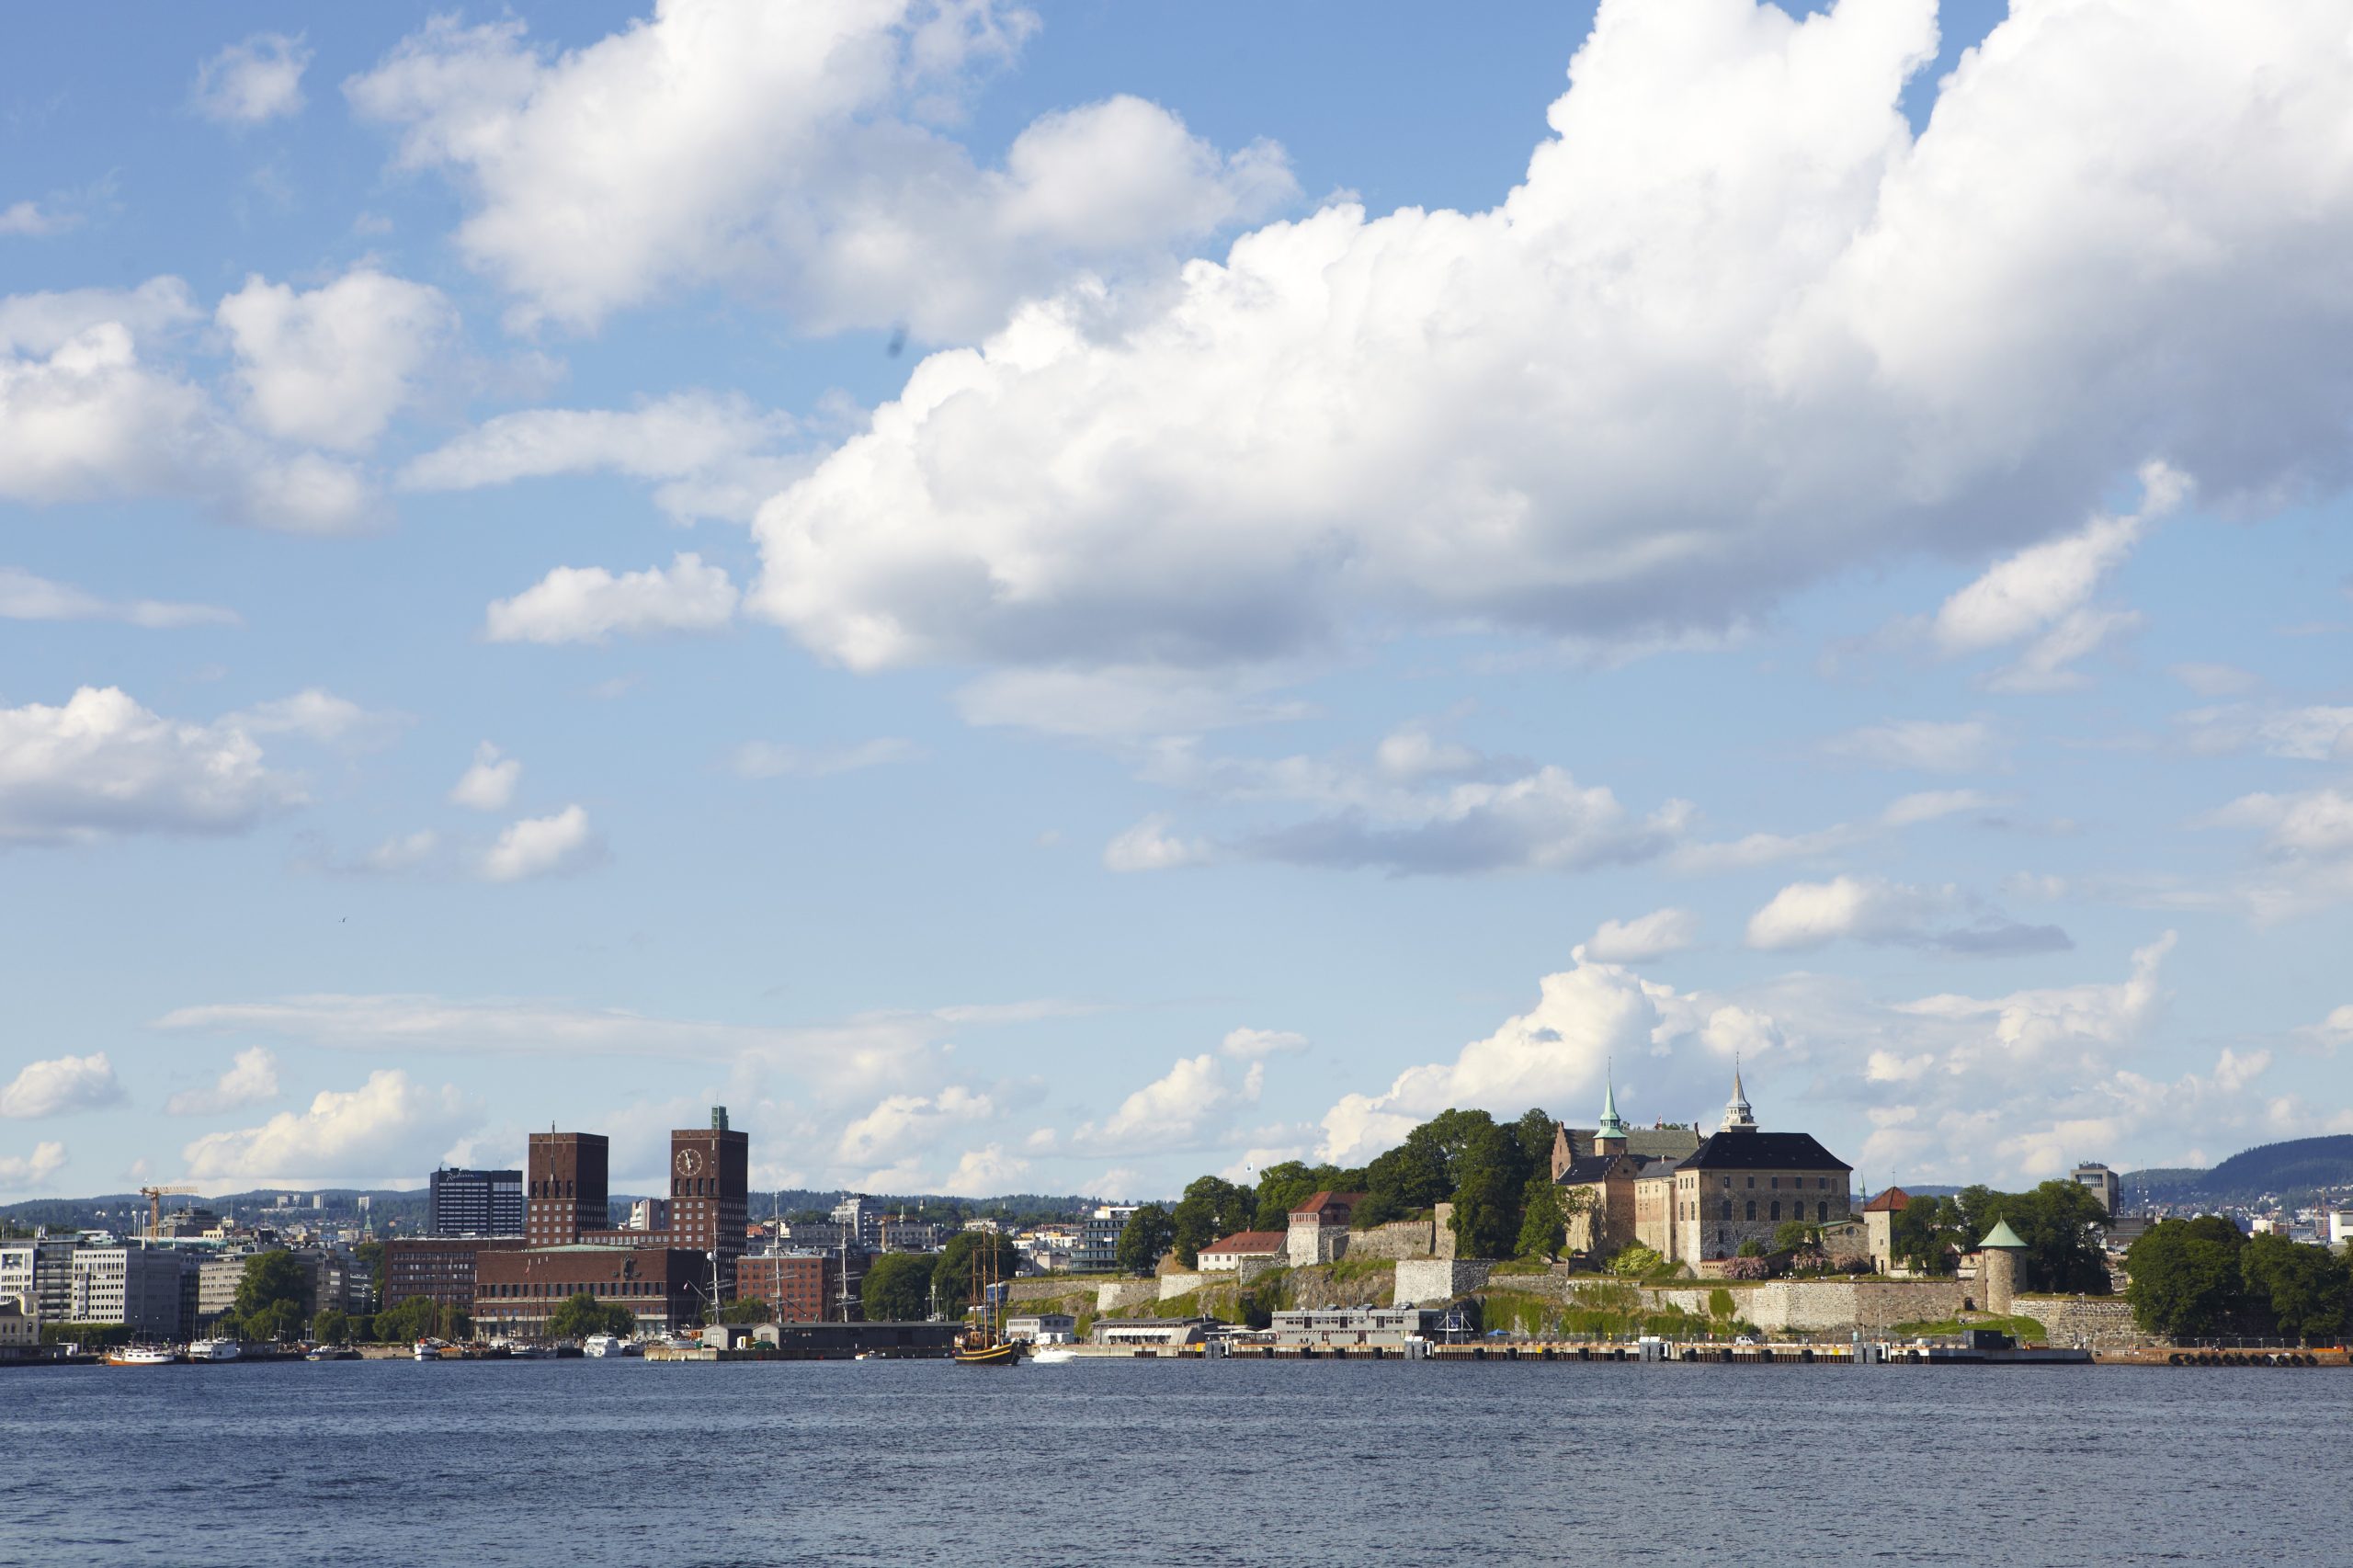 Oslokaia med Oslo Rådhus og Akershus festning kan ses på en fin sommerdag. Bilde tatt fra båt.